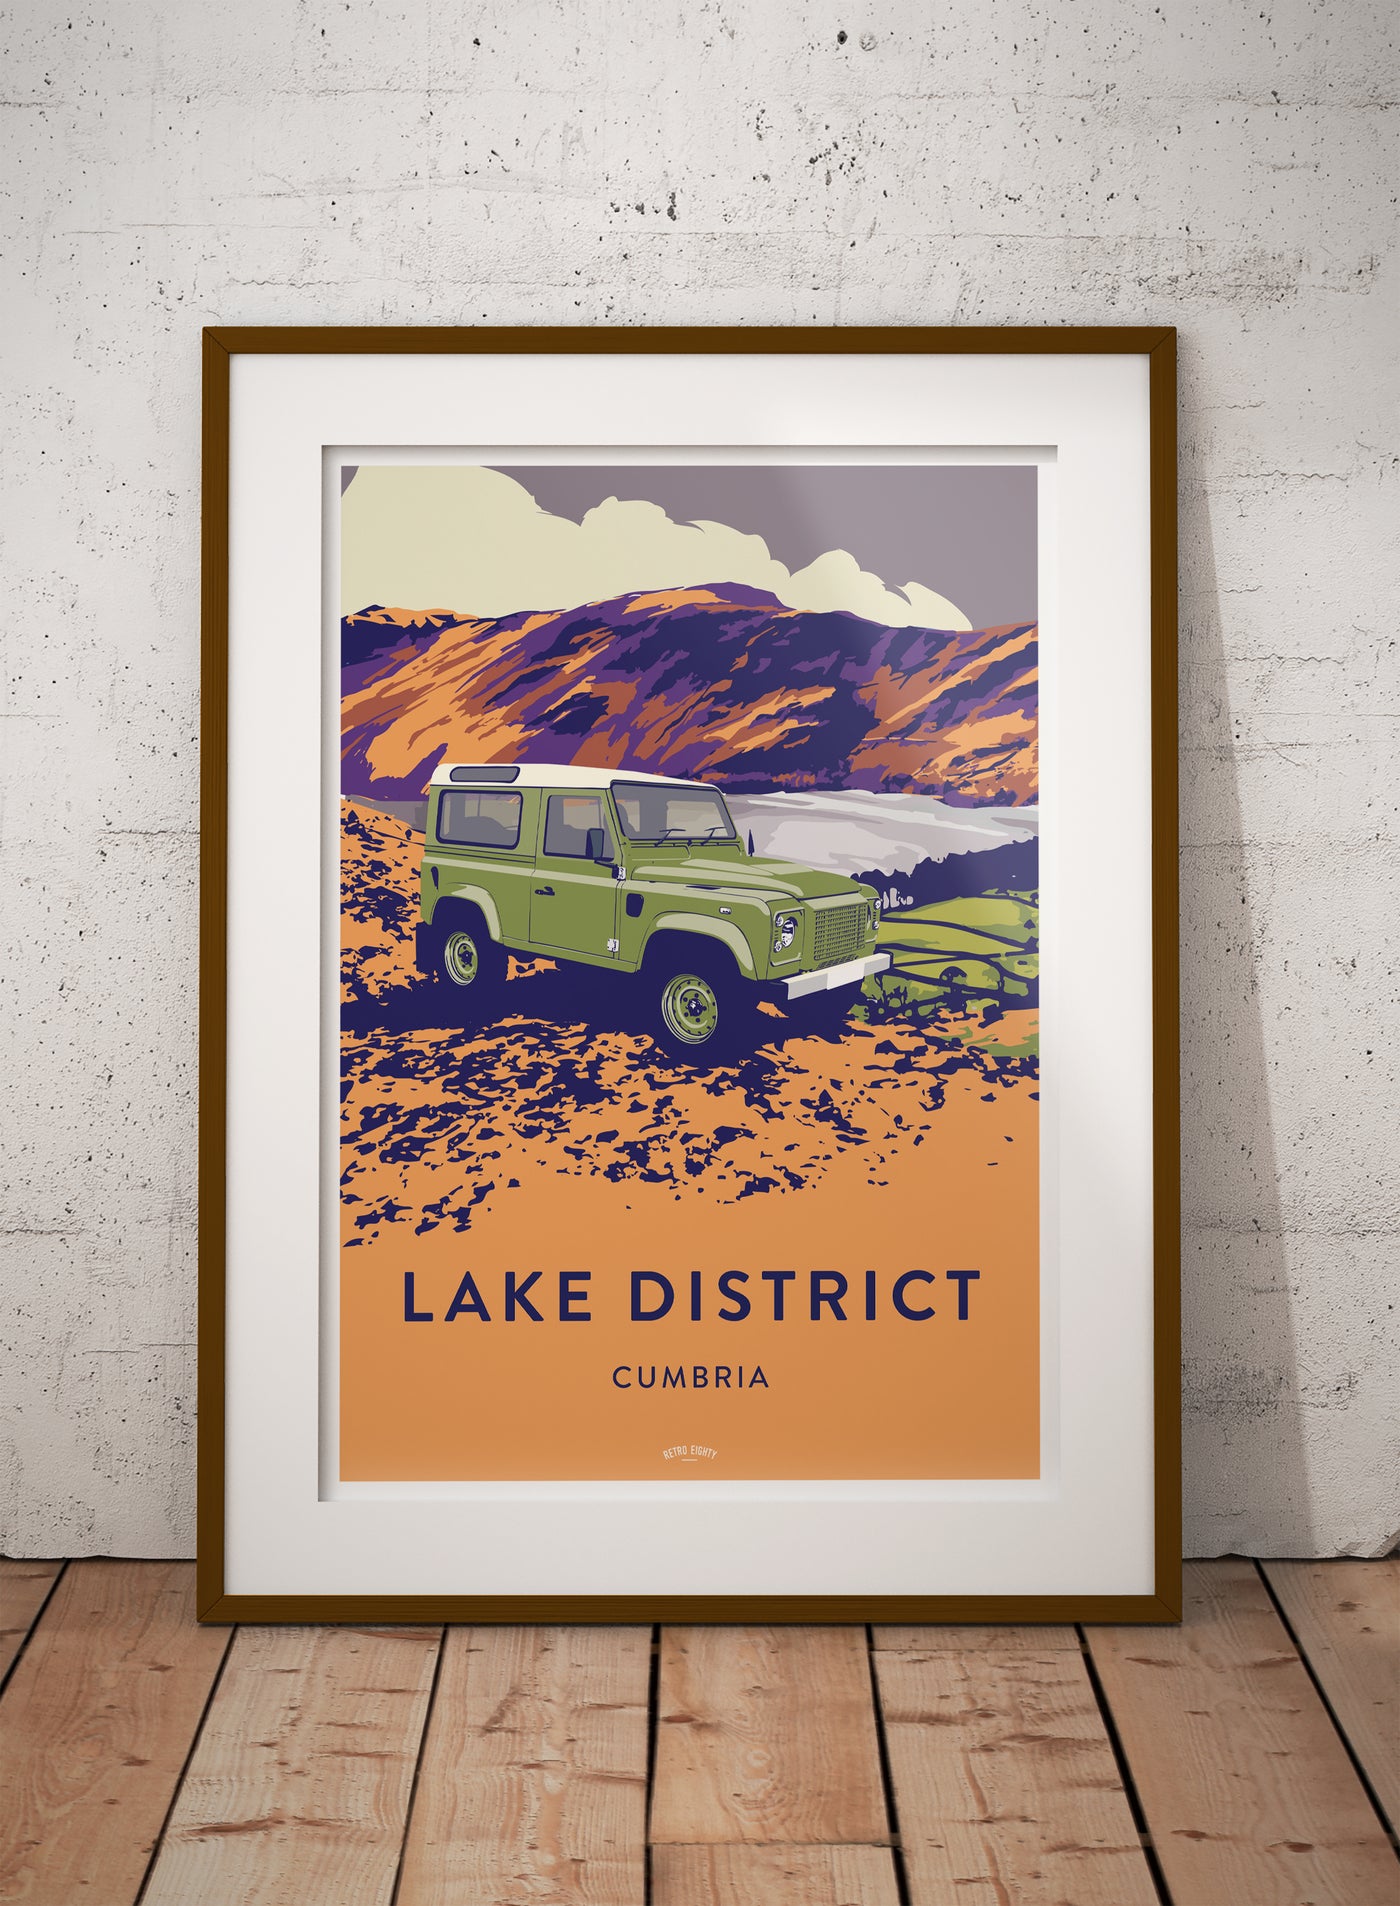 'Lake District' 90 Prints